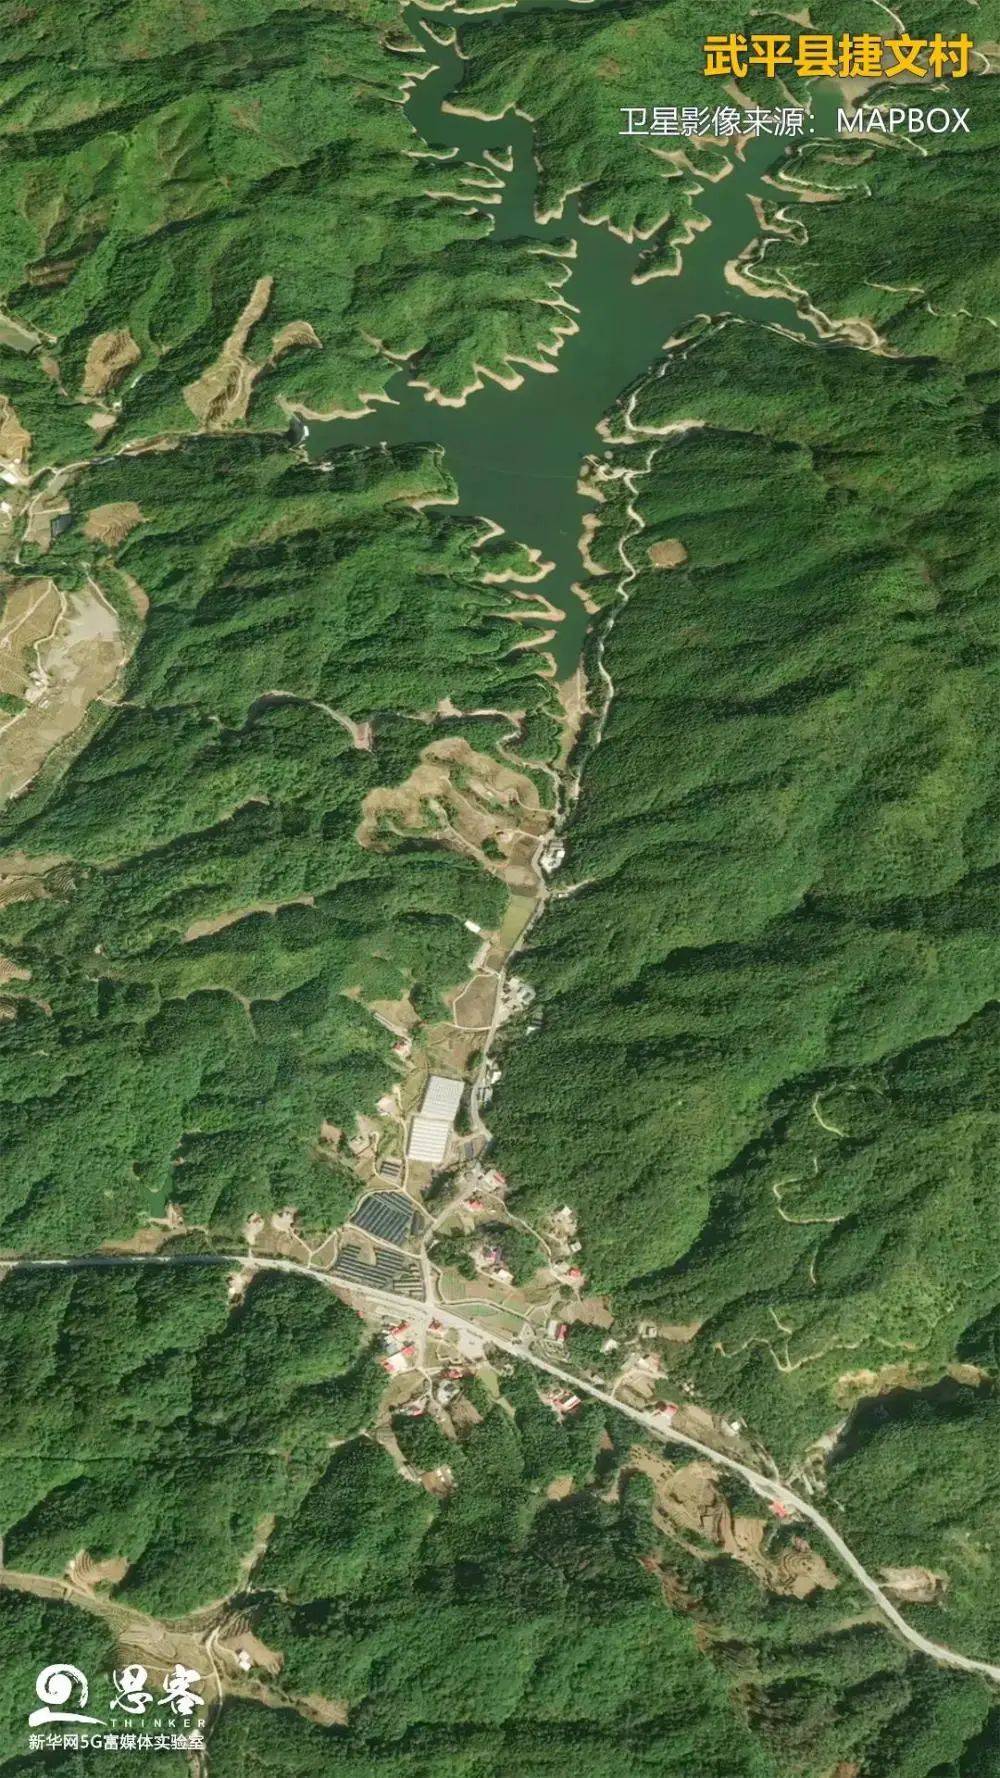 武平县捷文村.卫星影像来源:mapbox